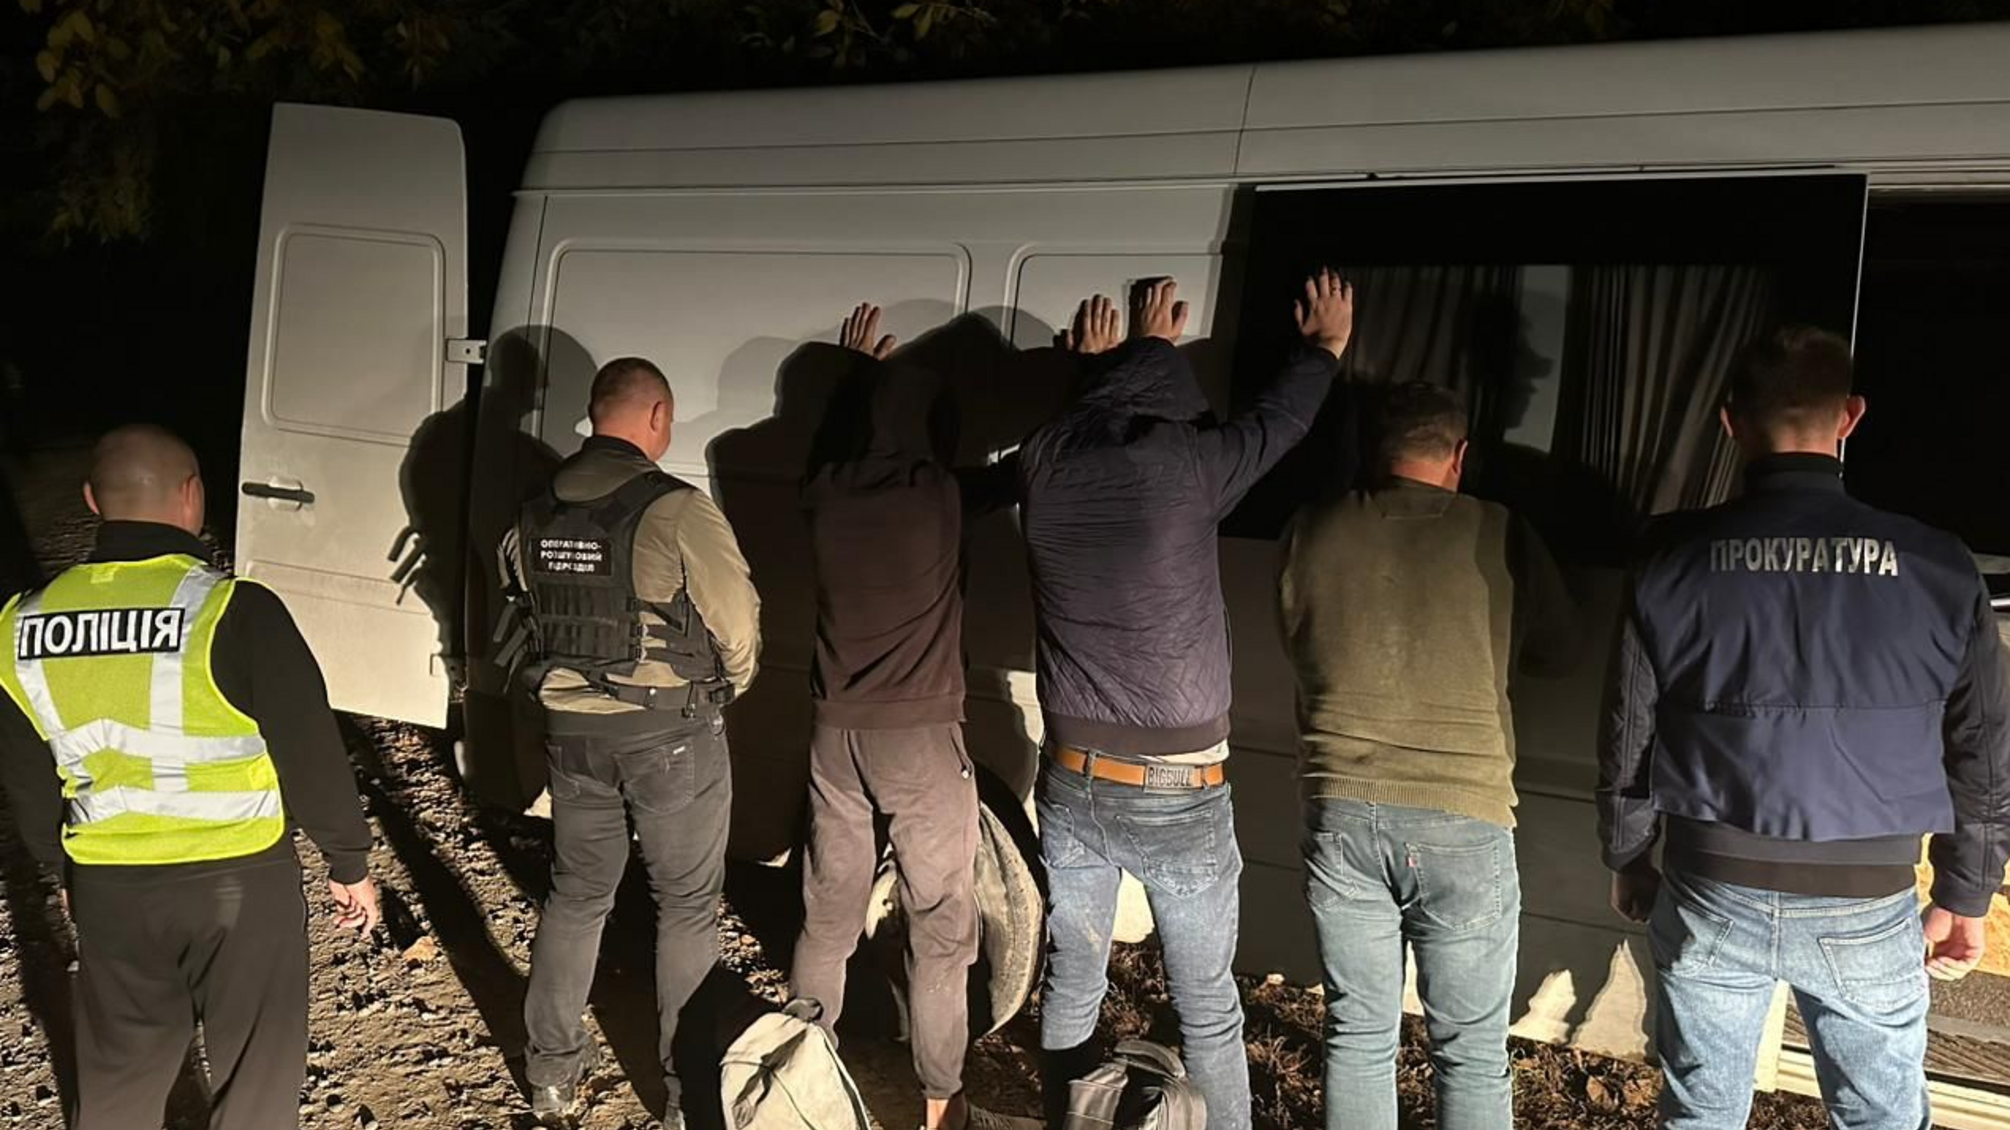 Прикордонники затримали депутата-таксиста, який за гроші переправляв ухилянтів через кордон